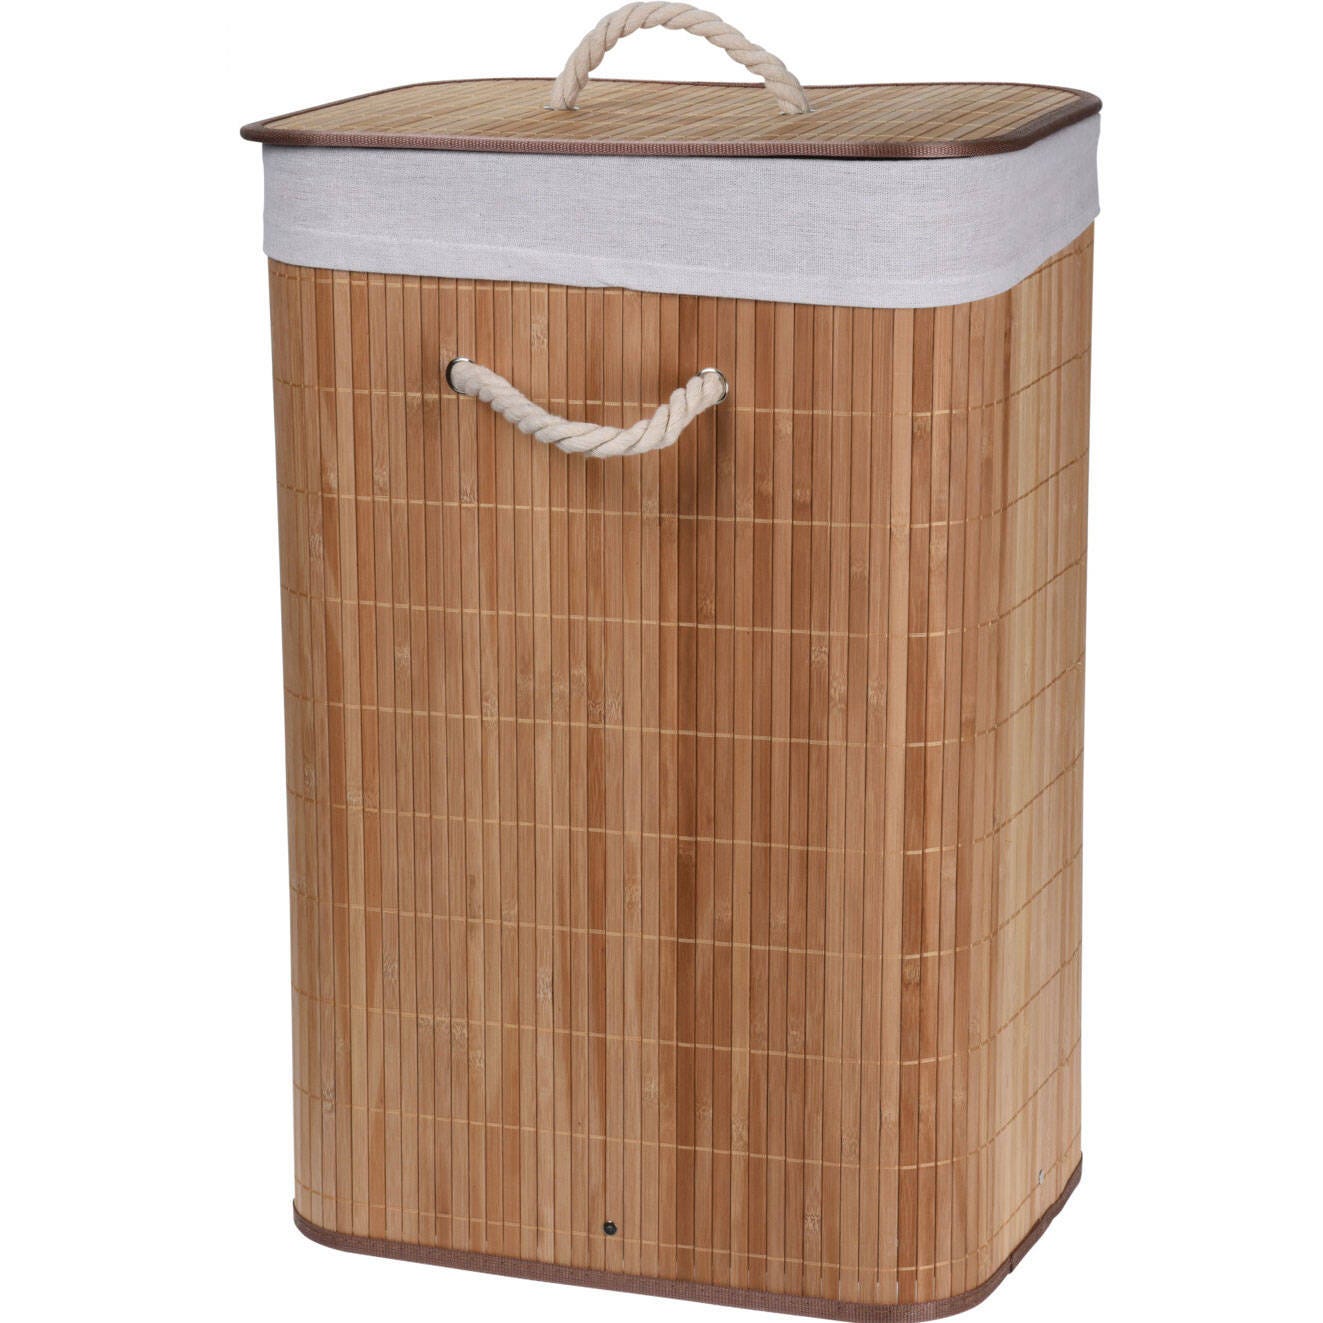 Bathroom Solutions Cesto para la colada plegable bambú